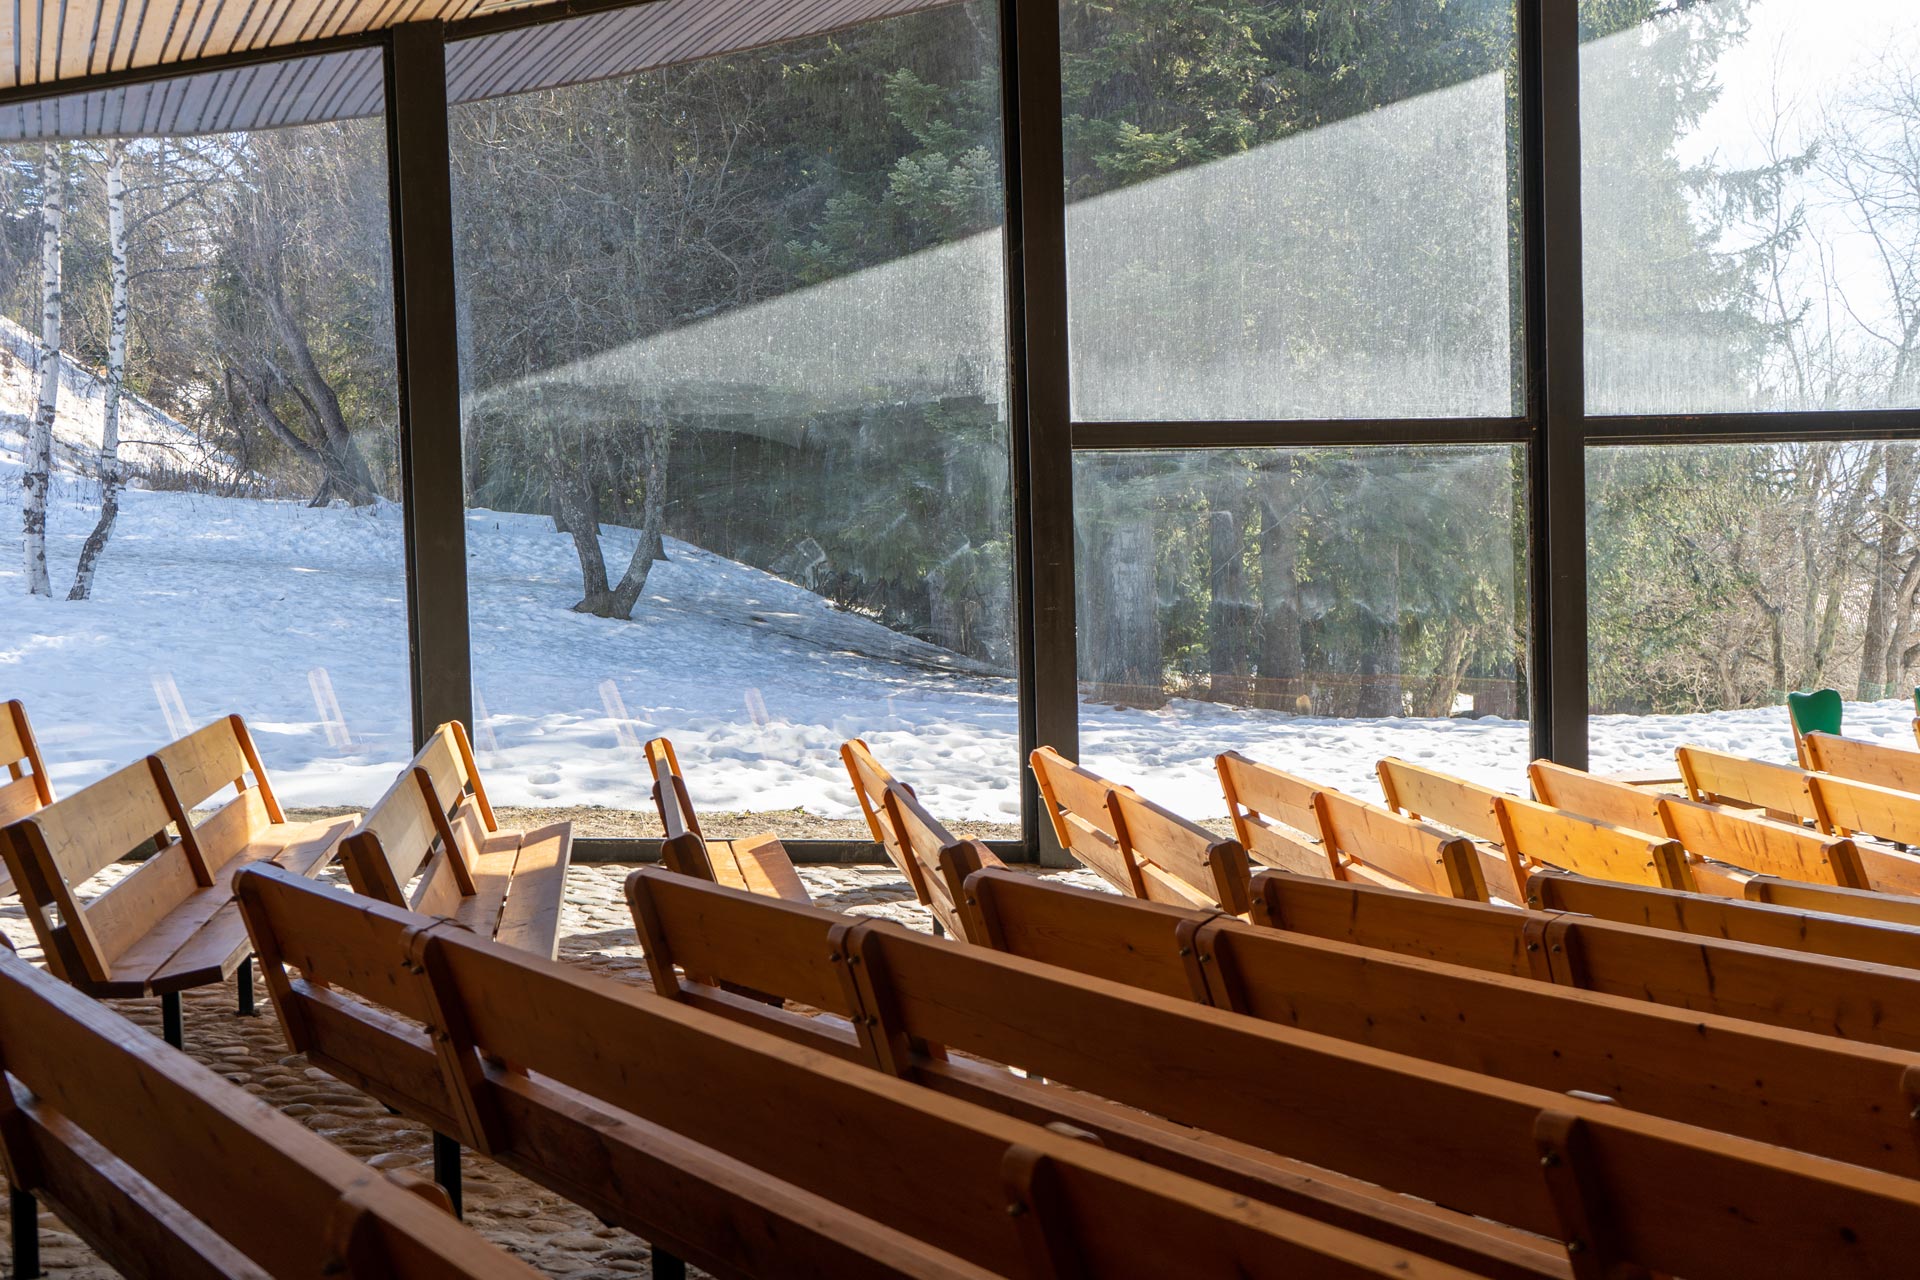 Chamrousse visite patrimoine expérience artitude oeuvre art architecture église Saint-Esprit station ski montagne grenoble isère alpes france - © CH - OT Chamrousse